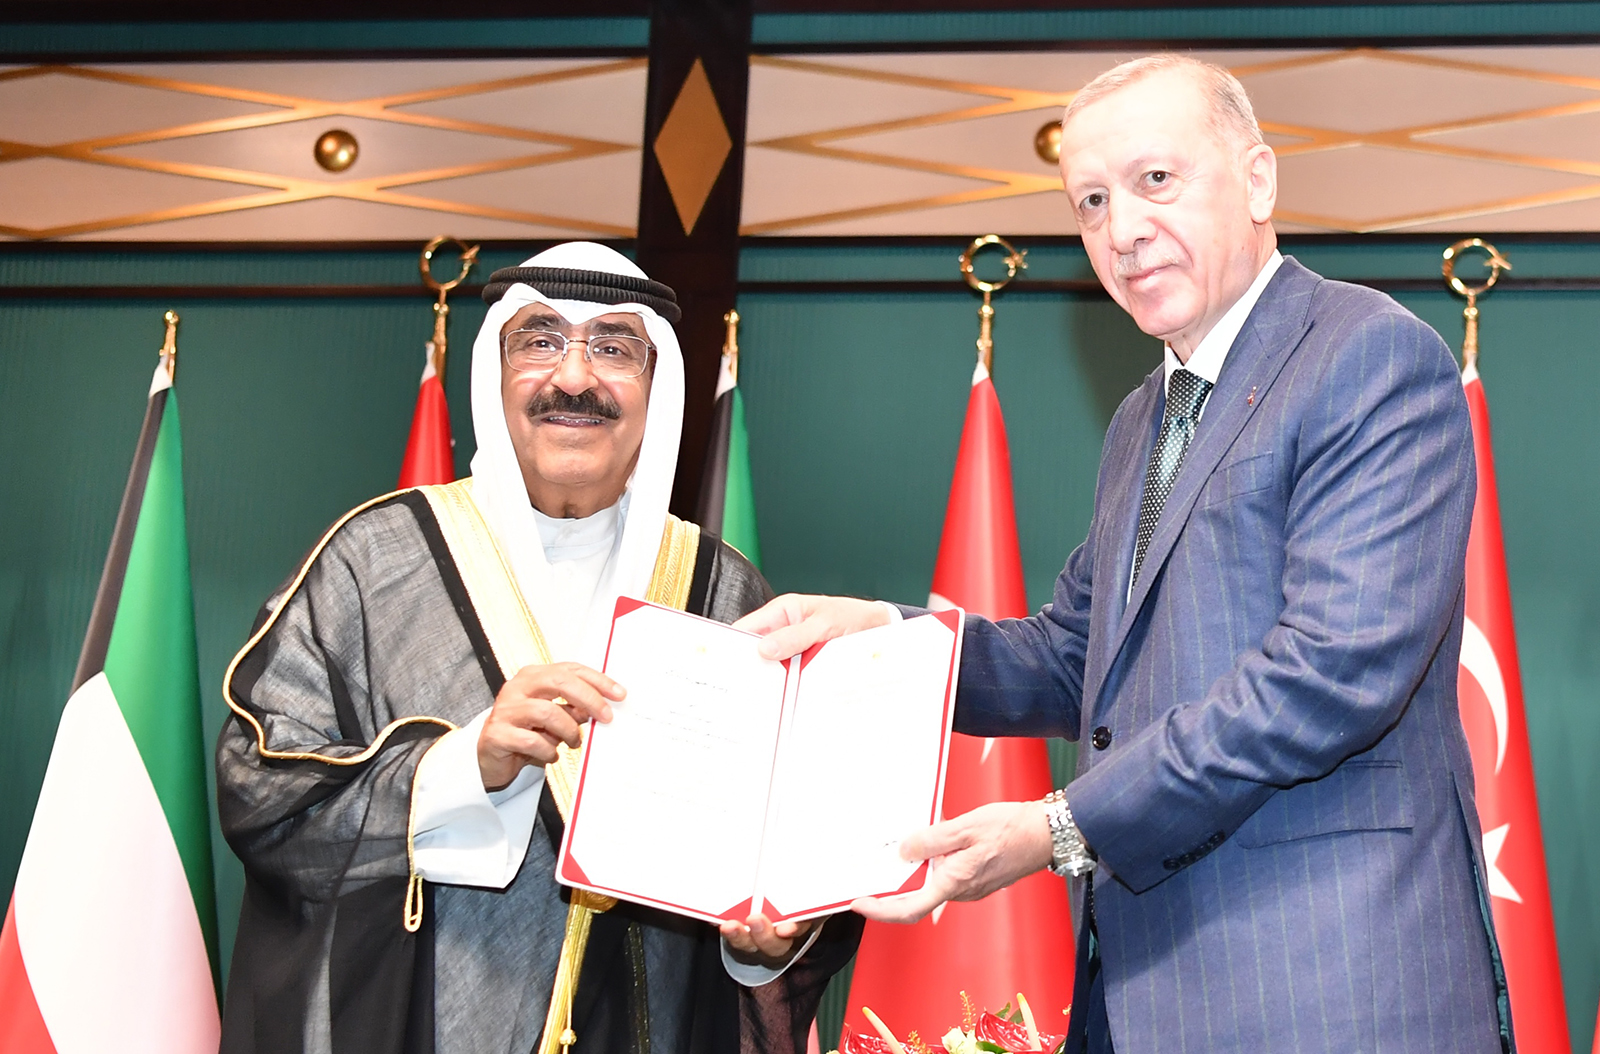 الرئيس التركي يقلد سمو أمير البلاد وسام الدولة